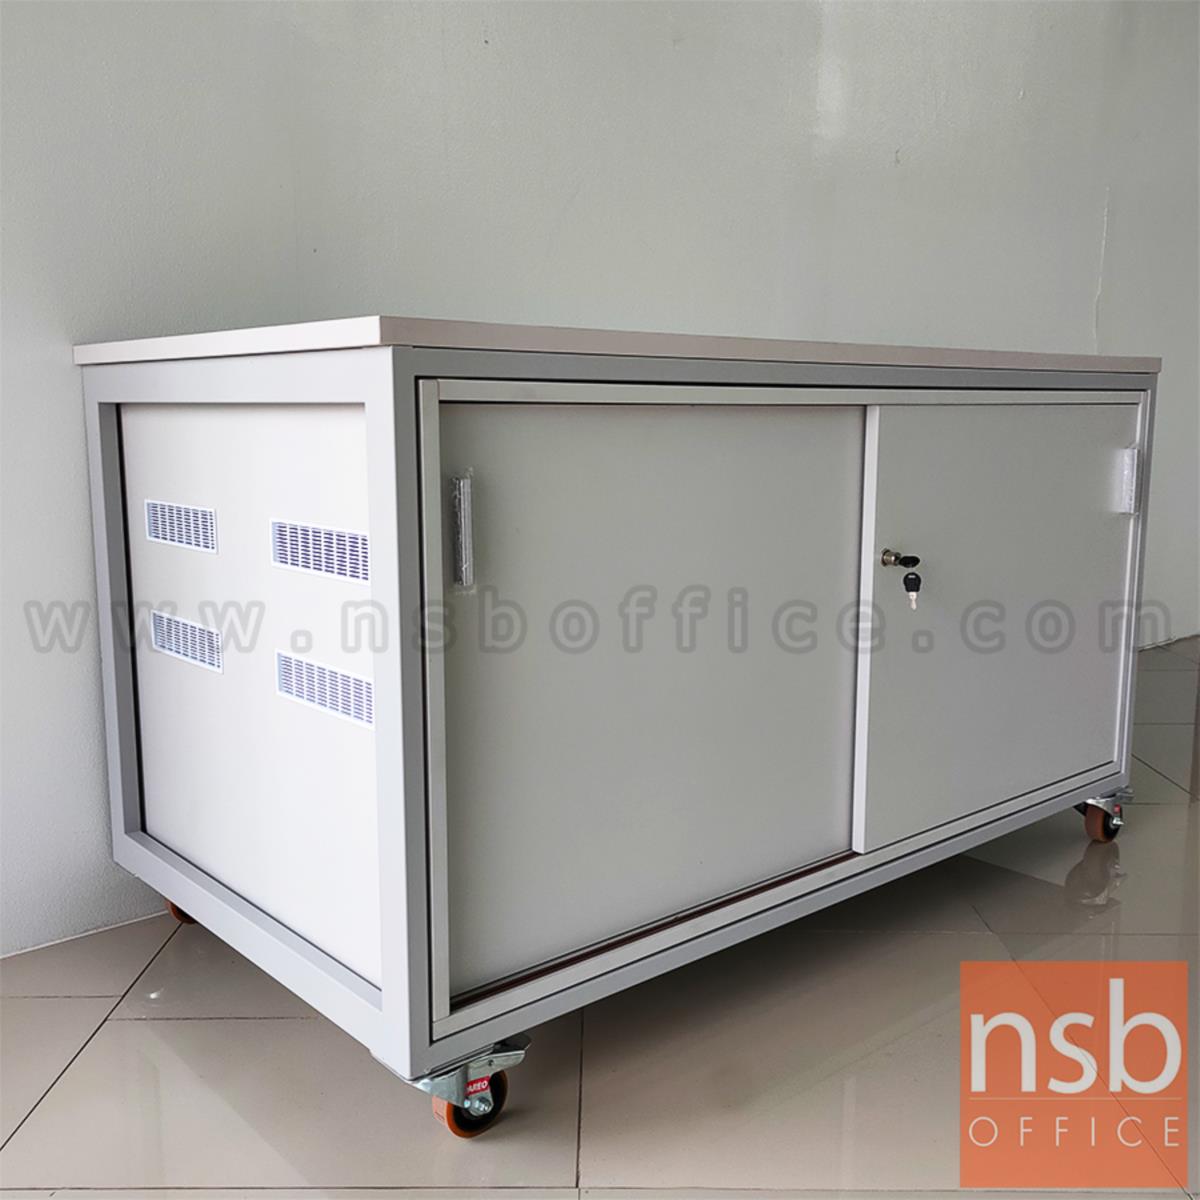 ตู้แลปเก็บอุปกรณ์ บานเลื่อน รุ่น Scenery (ซีนเนอรี่) top HPL ขนาด 150W*80D cm. ล้อเลื่อน